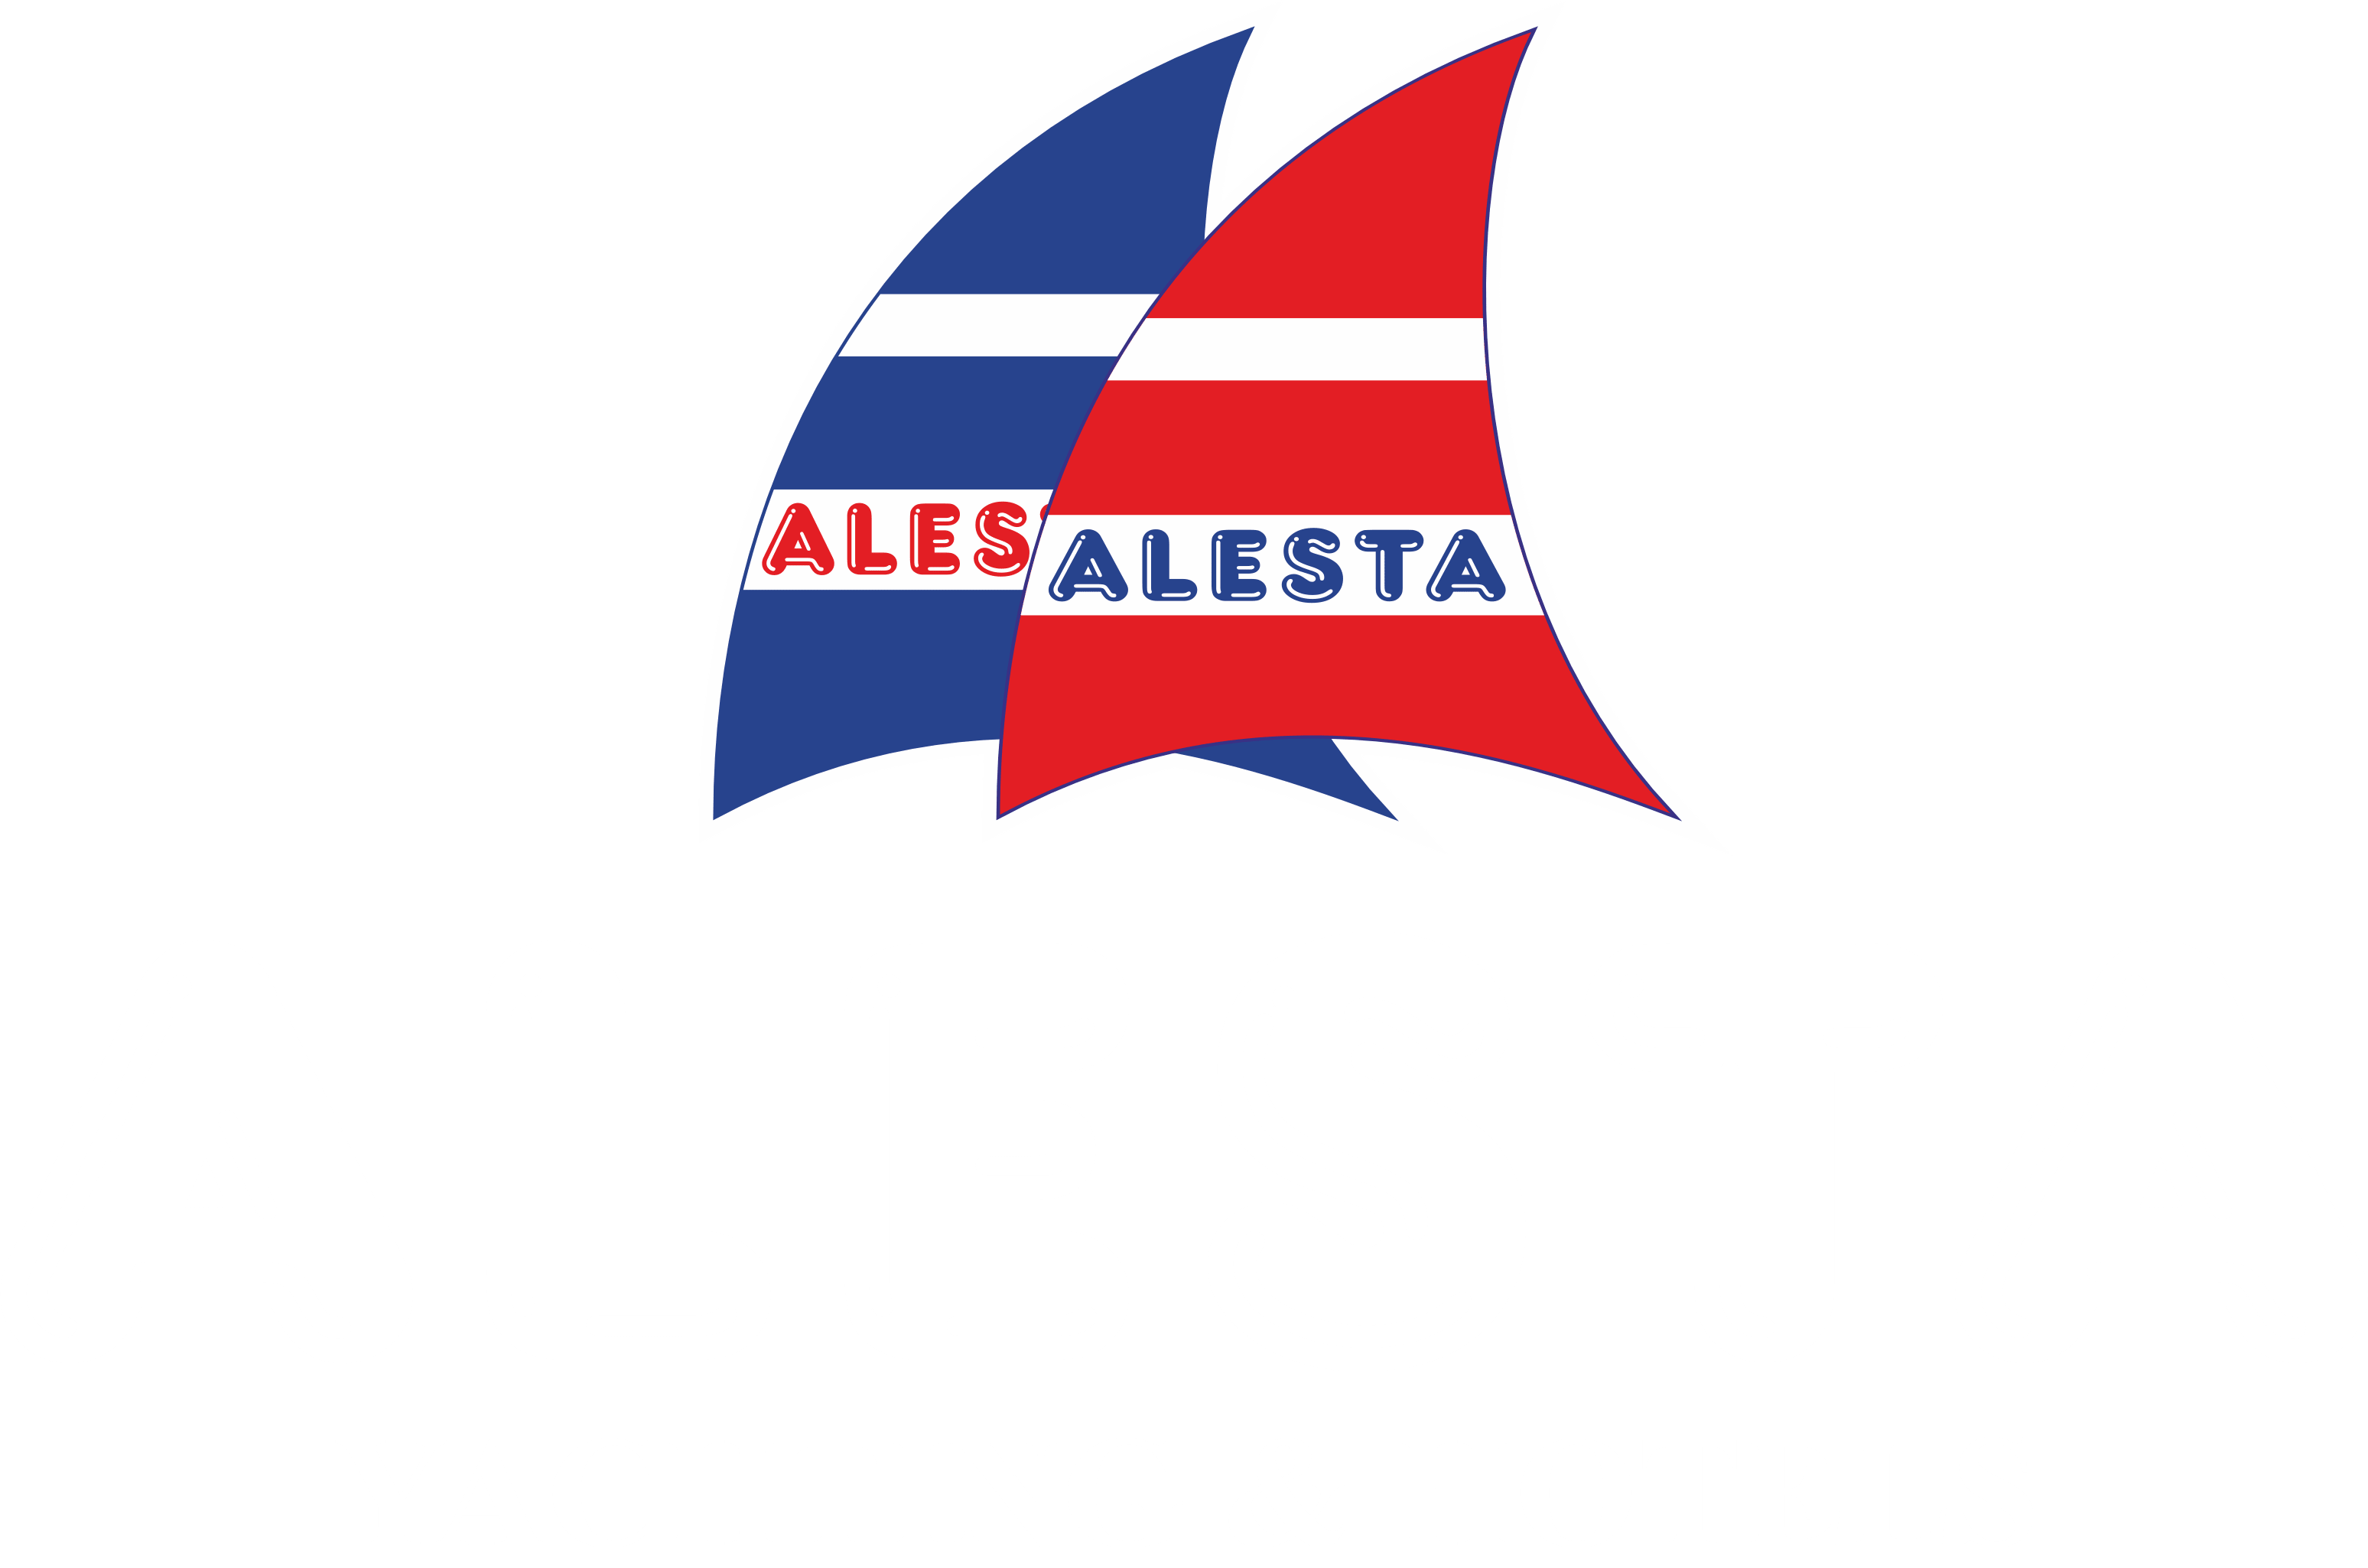 Fethiye Yat Kiralama | Alesta Yachting | Fethiye Yacht Rental | What Are Our Fethiye Yacht Services? - Fethiye Yat Kiralama | Alesta Yachting | Fethiye Yacht Rental